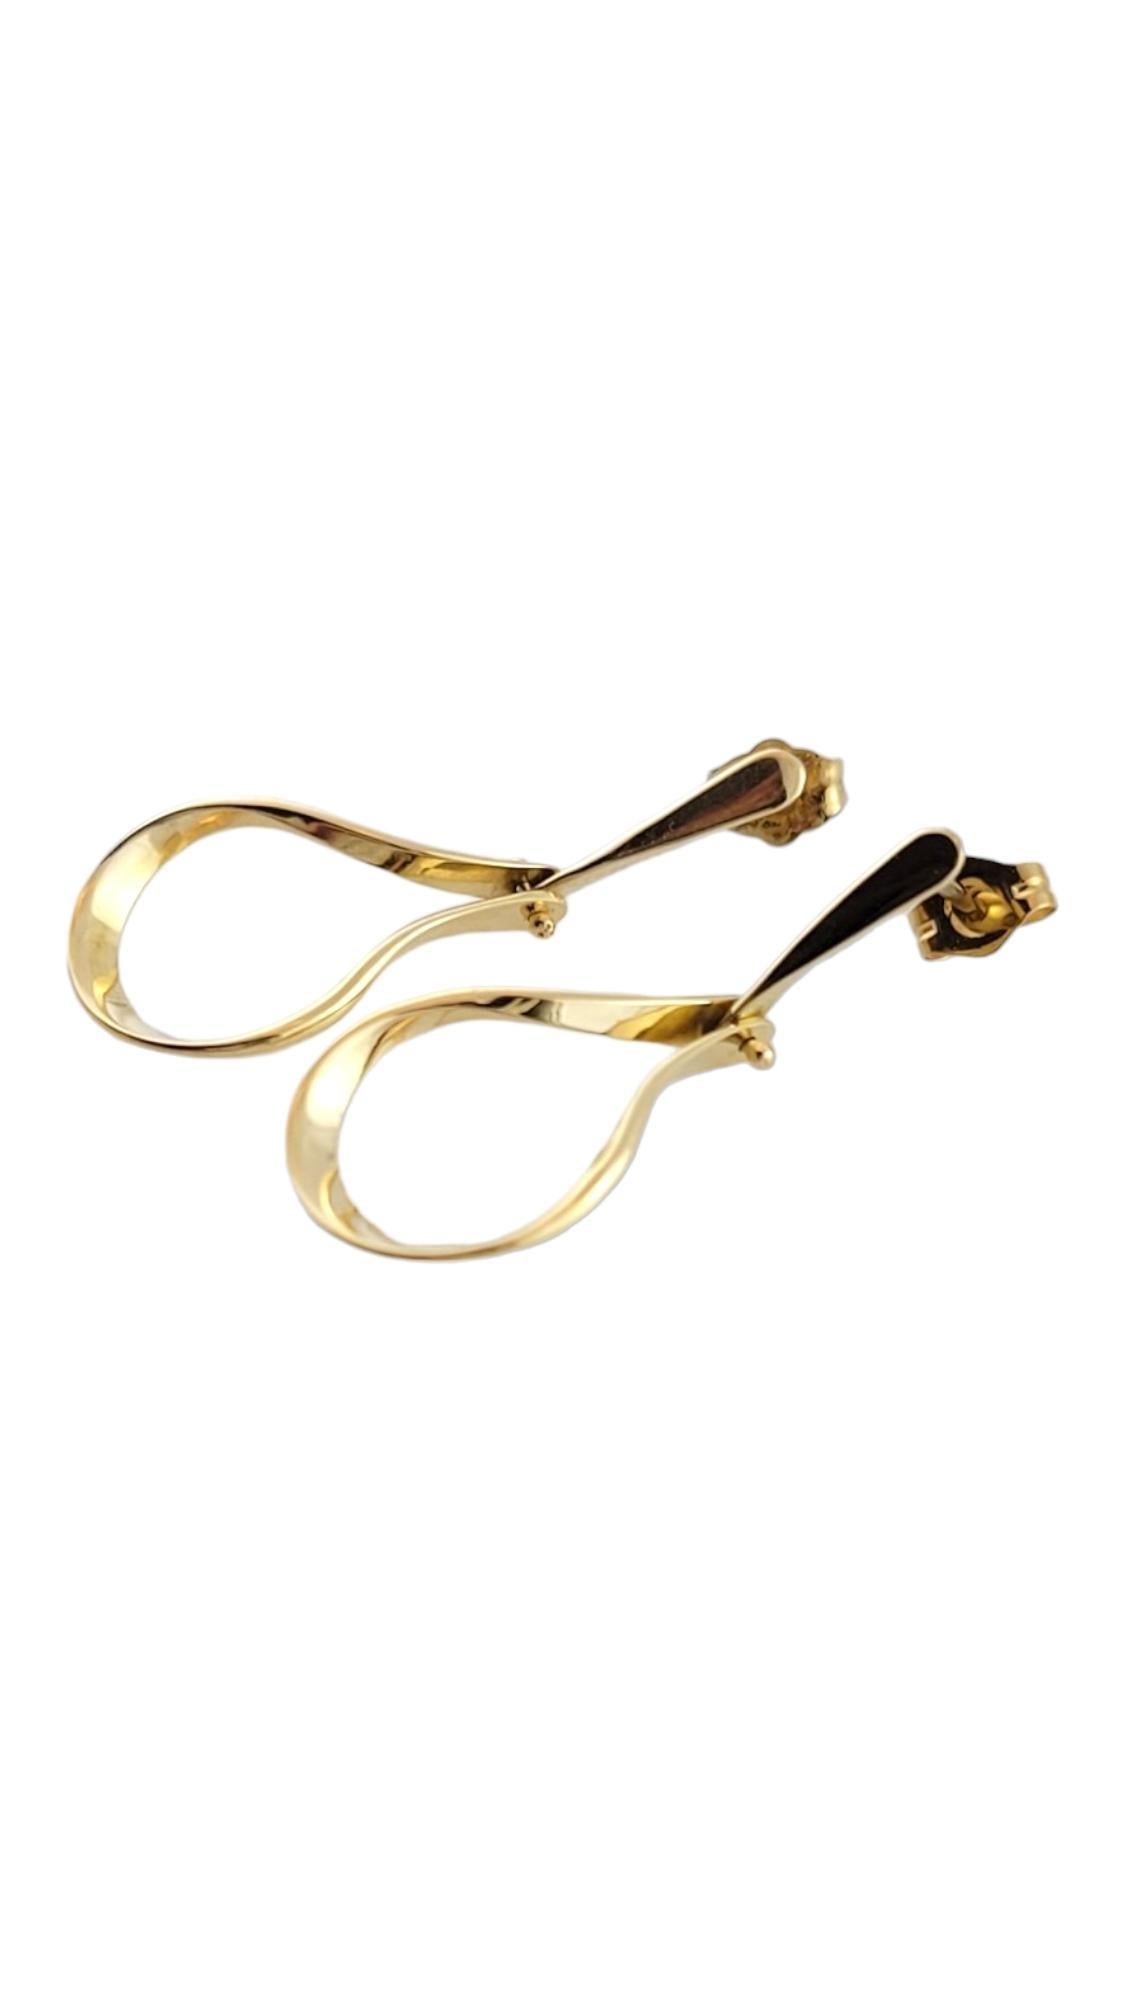 Boucles d'oreilles pendantes vintage en or jaune 14K

Cette magnifique paire de boucles d'oreilles pendantes est magnifiquement réalisée en or jaune 14 carats et conviendrait à tout le monde !

Taille : 31.1mm X 12.2mm X 2.4mm

Poids : 2,0 g/ 1,2